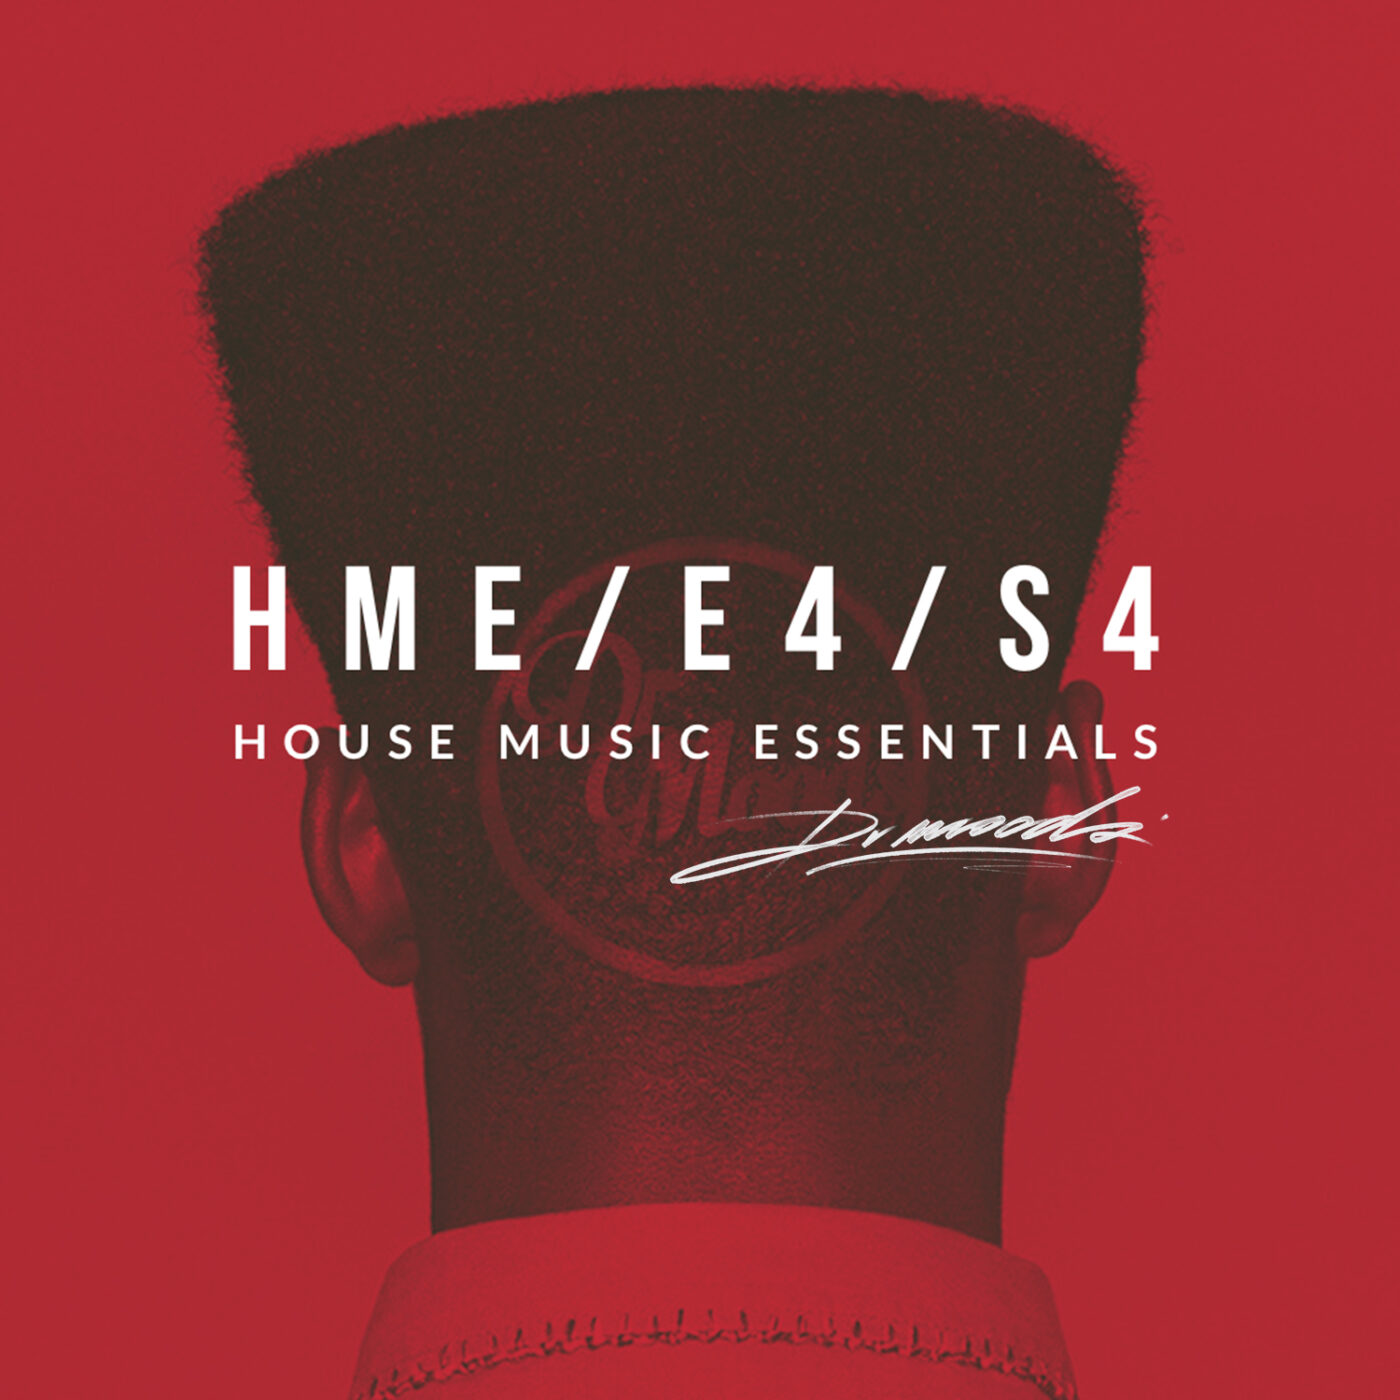 HOUSE MUSIC ESSENTIALS-E4/S4